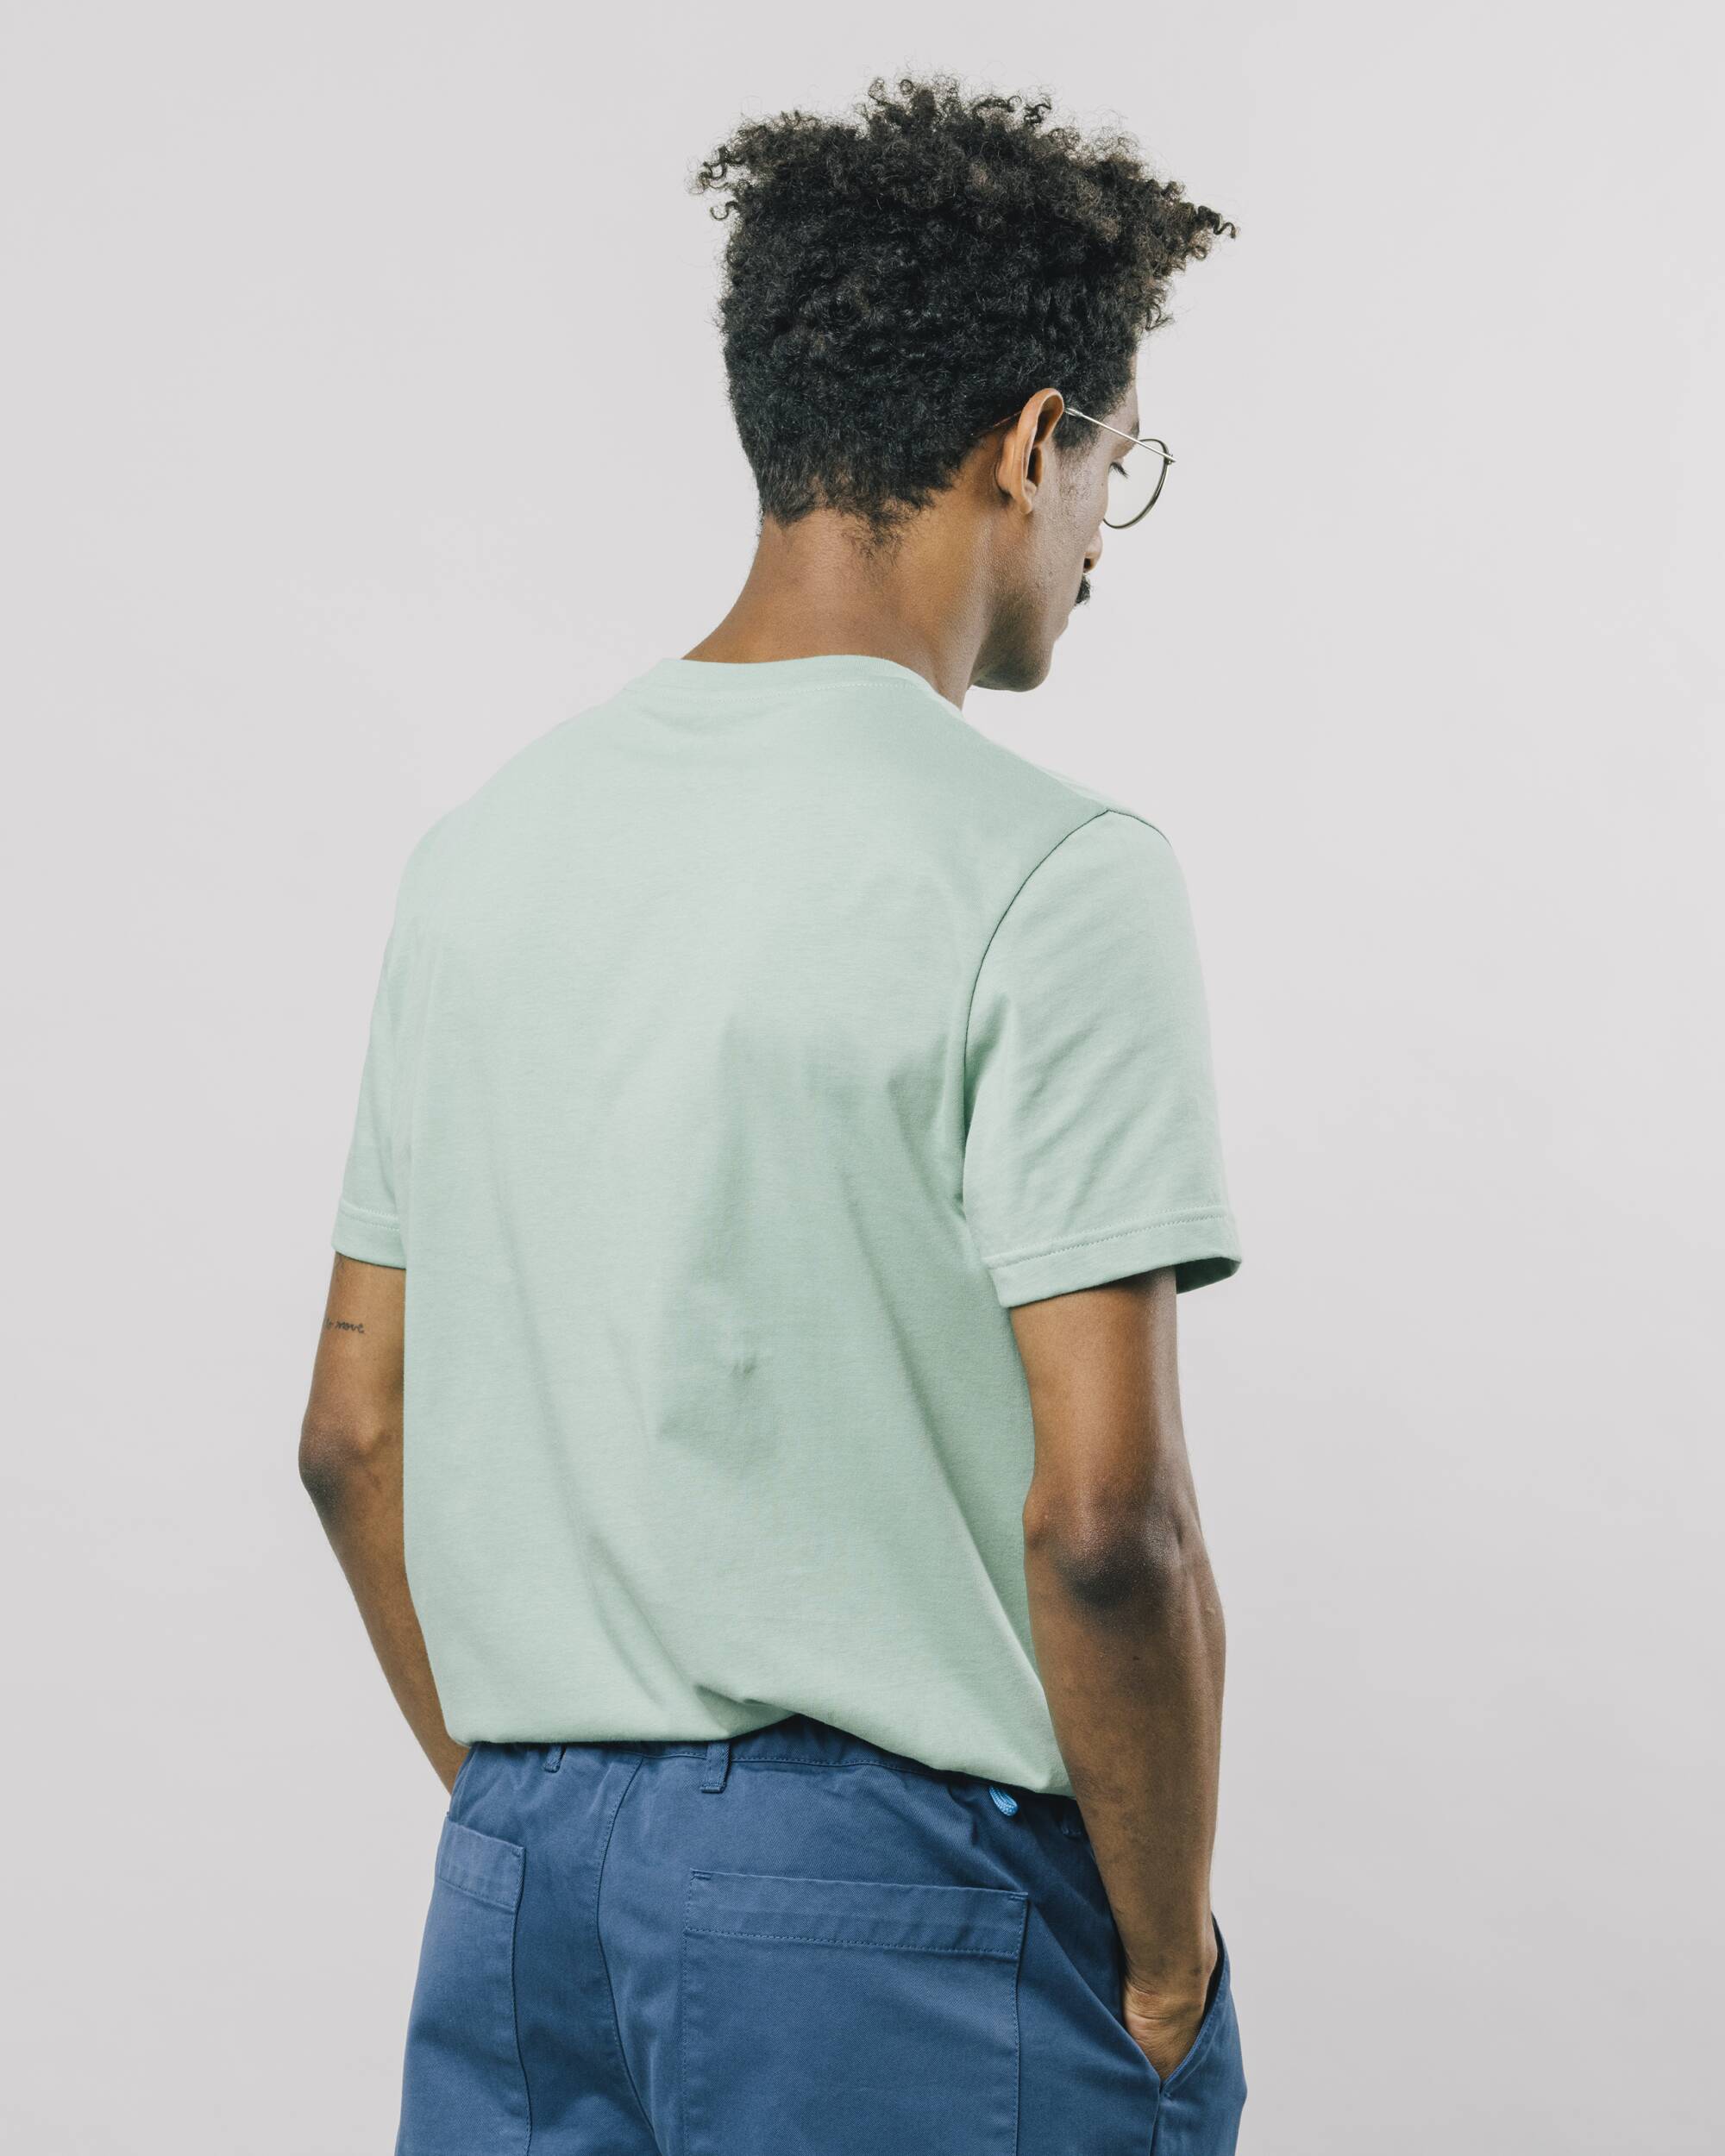 Hellgrünes, bedrucktes T-Shirt Break aus 100% Bio-Baumwolle von Brava Fabrics